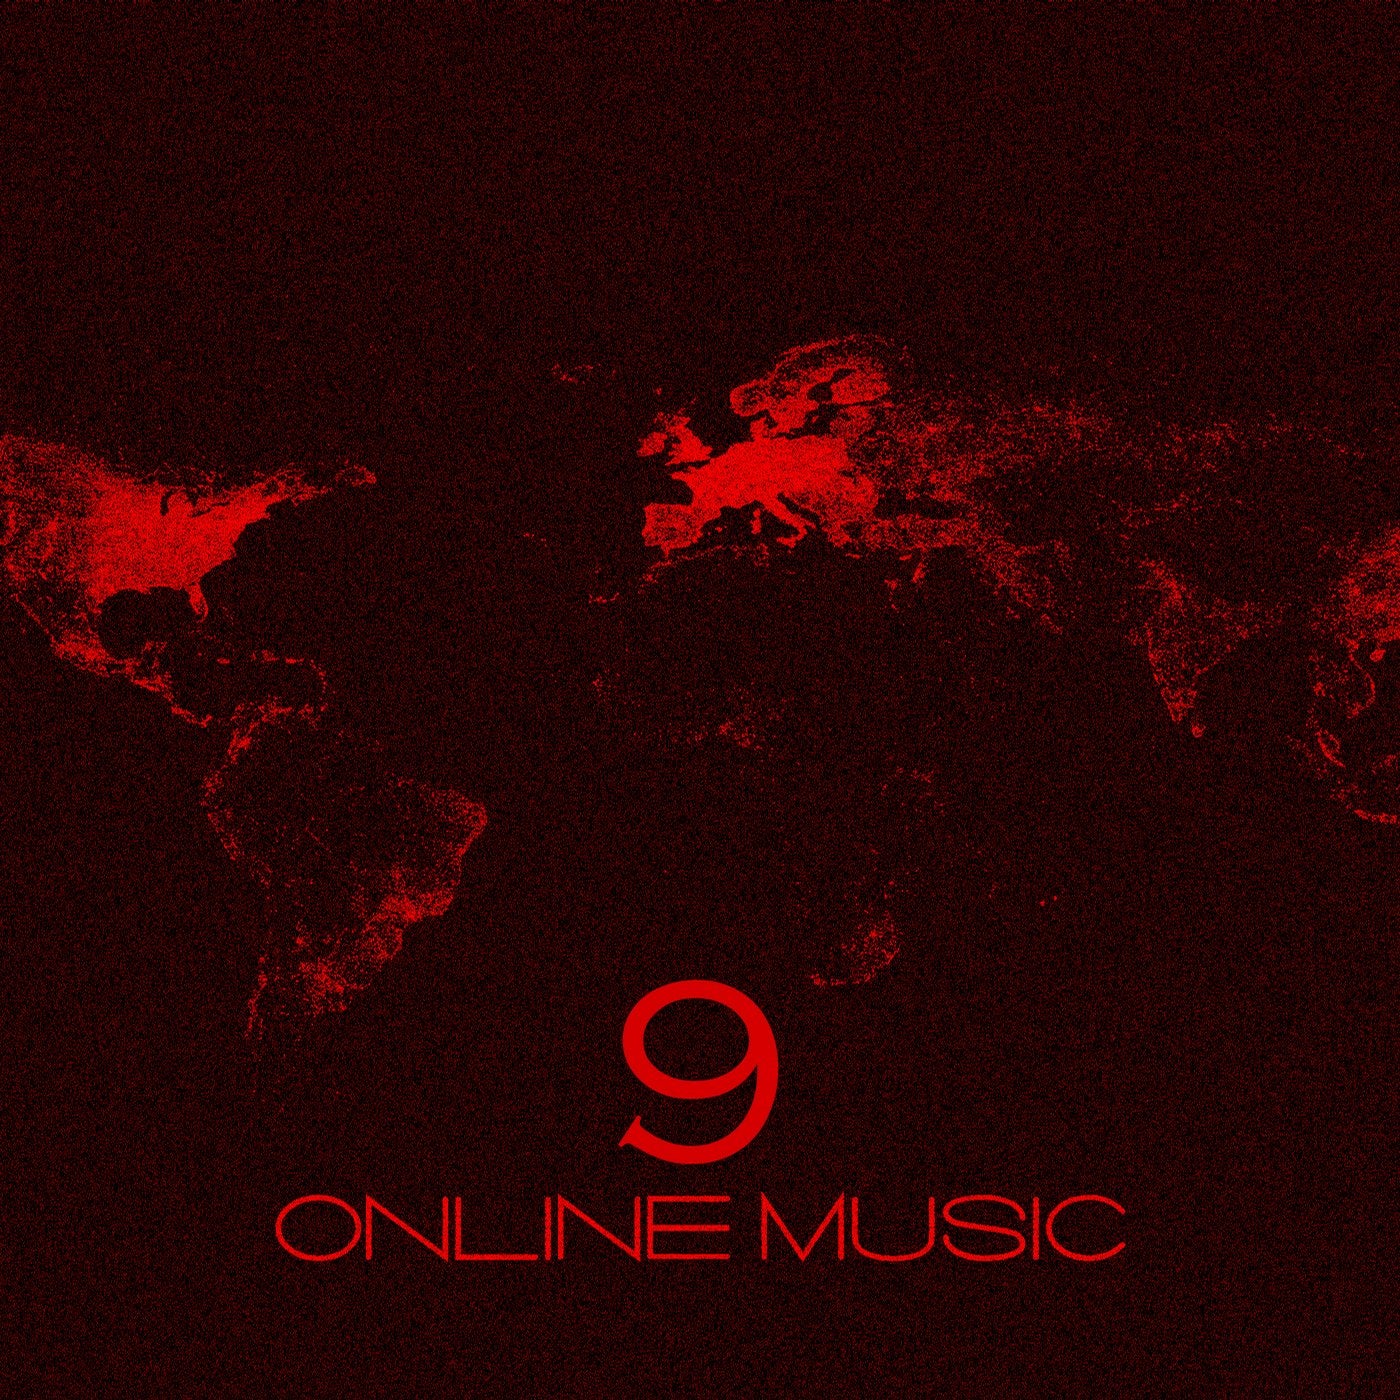 Online Music 9